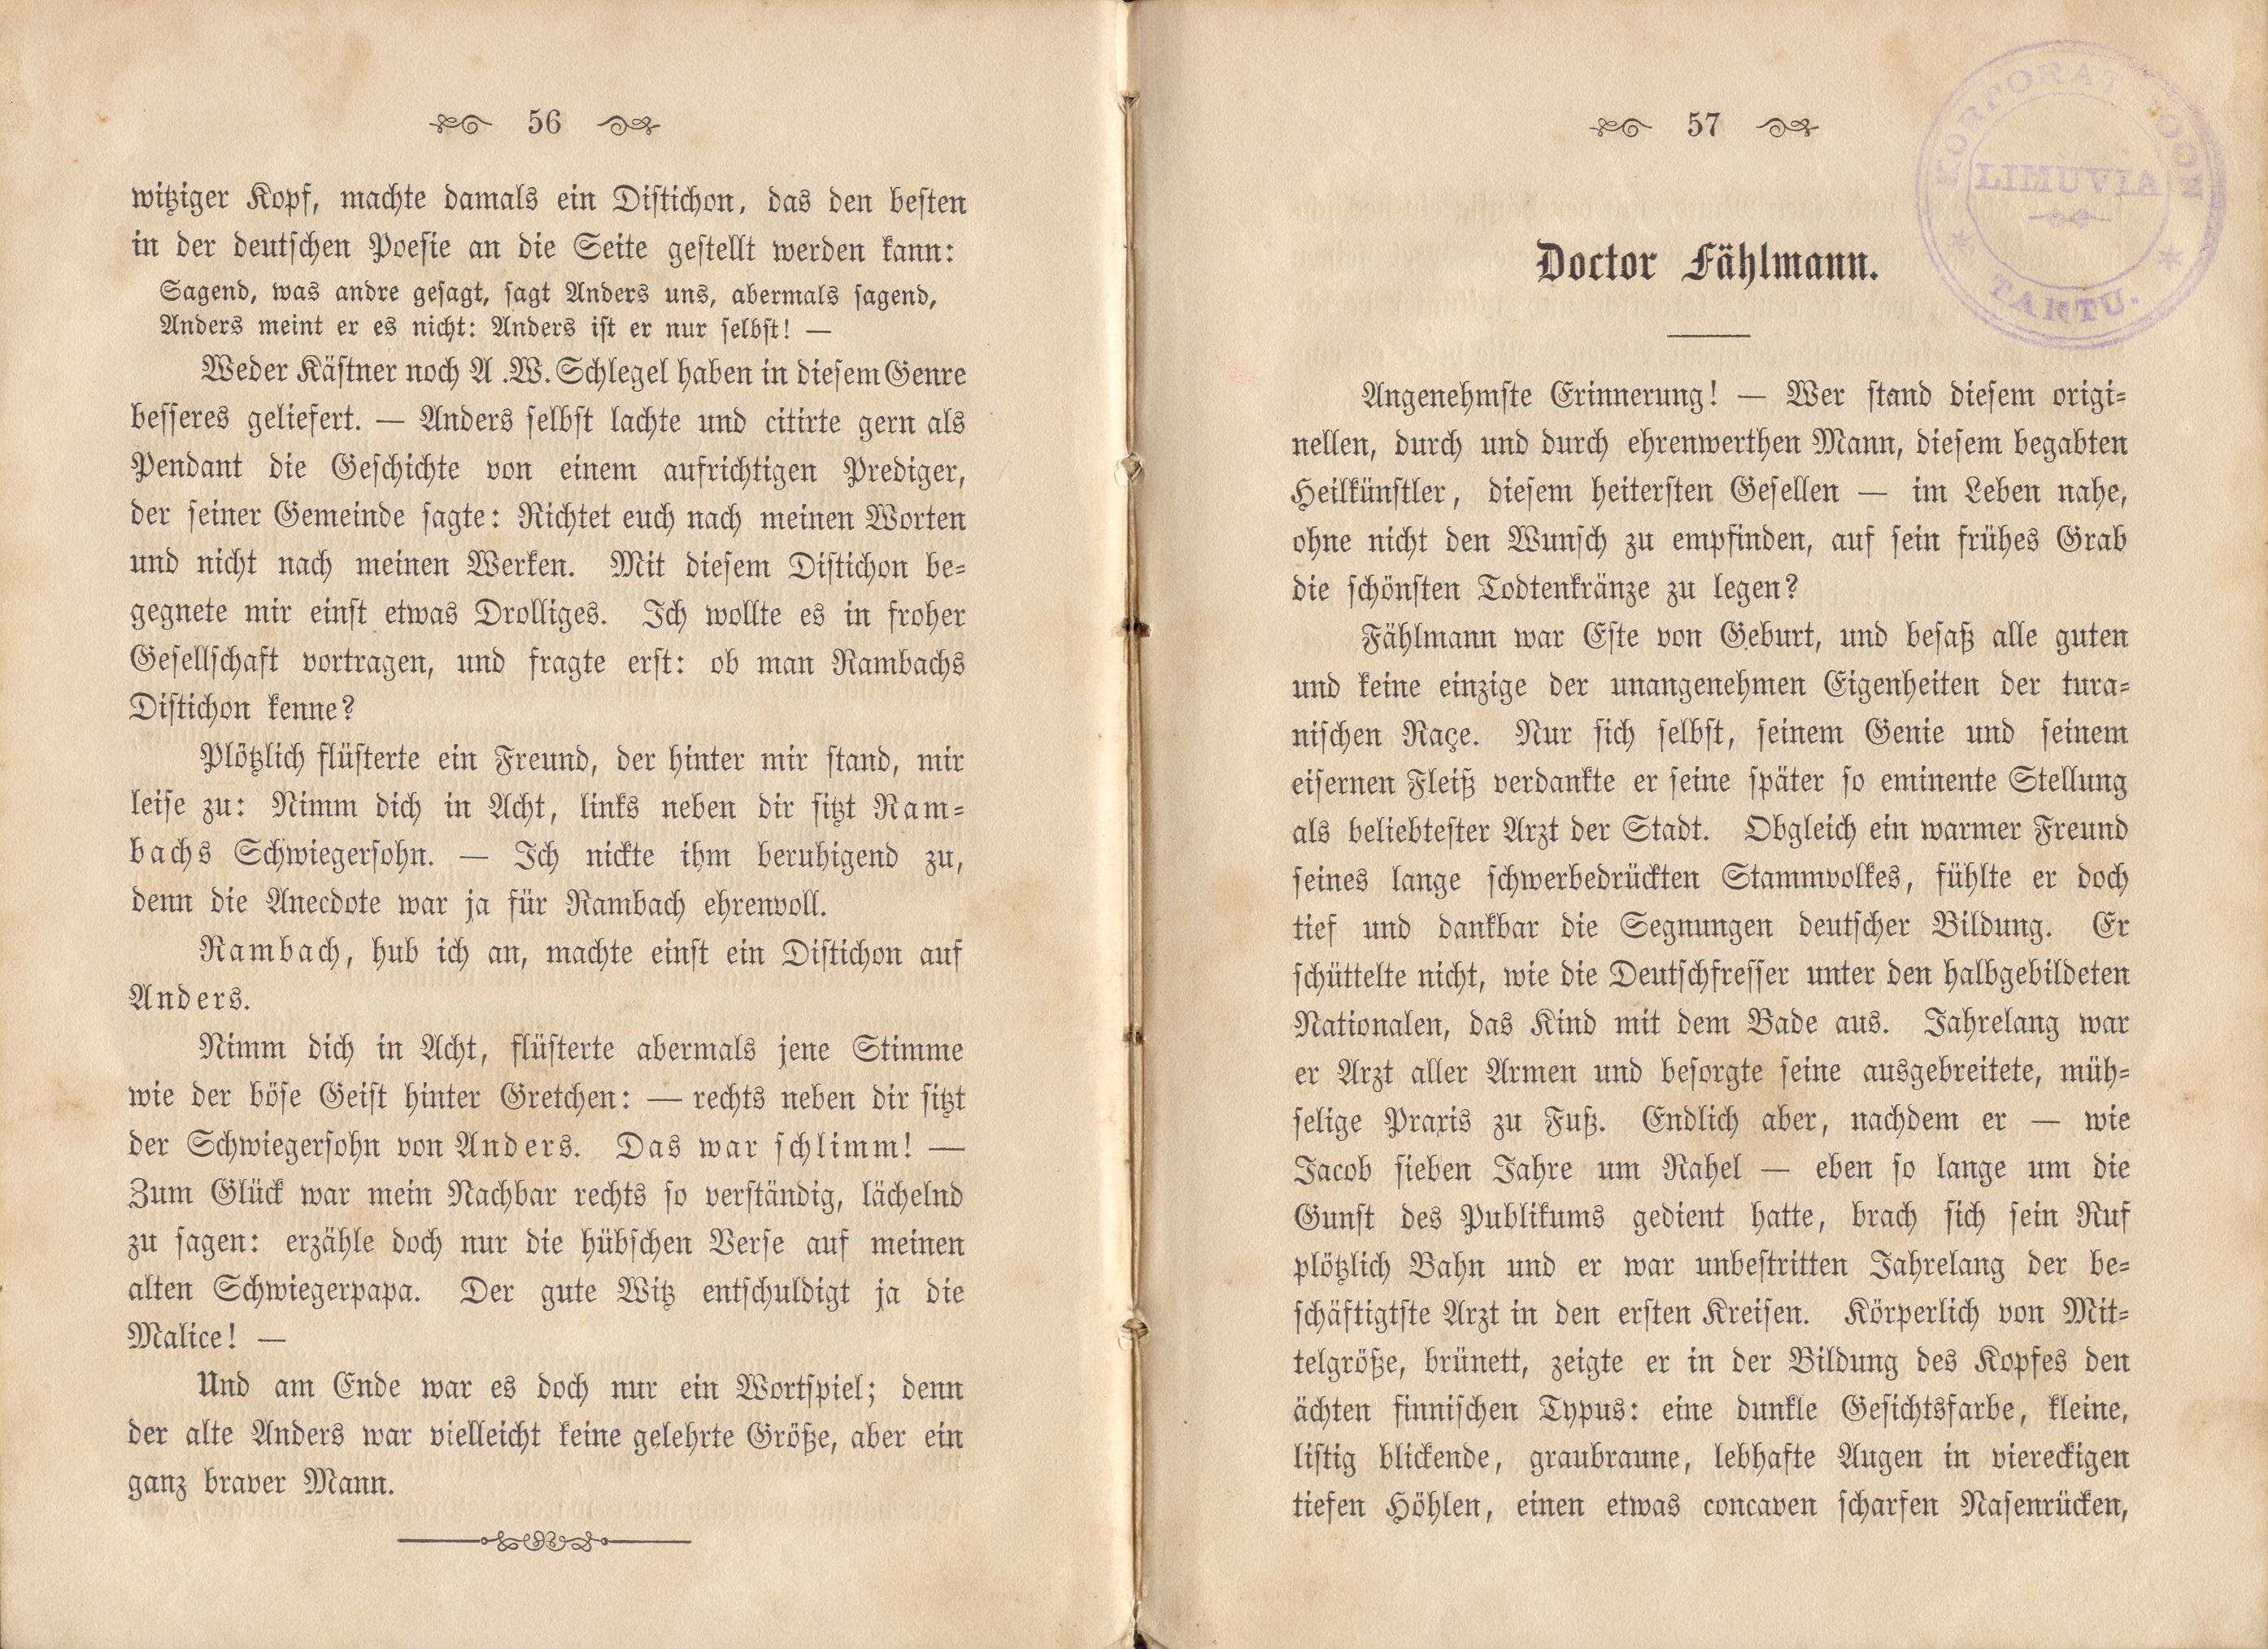 Dorpats Grössen und Typen (1868) | 31. (56-57) Main body of text